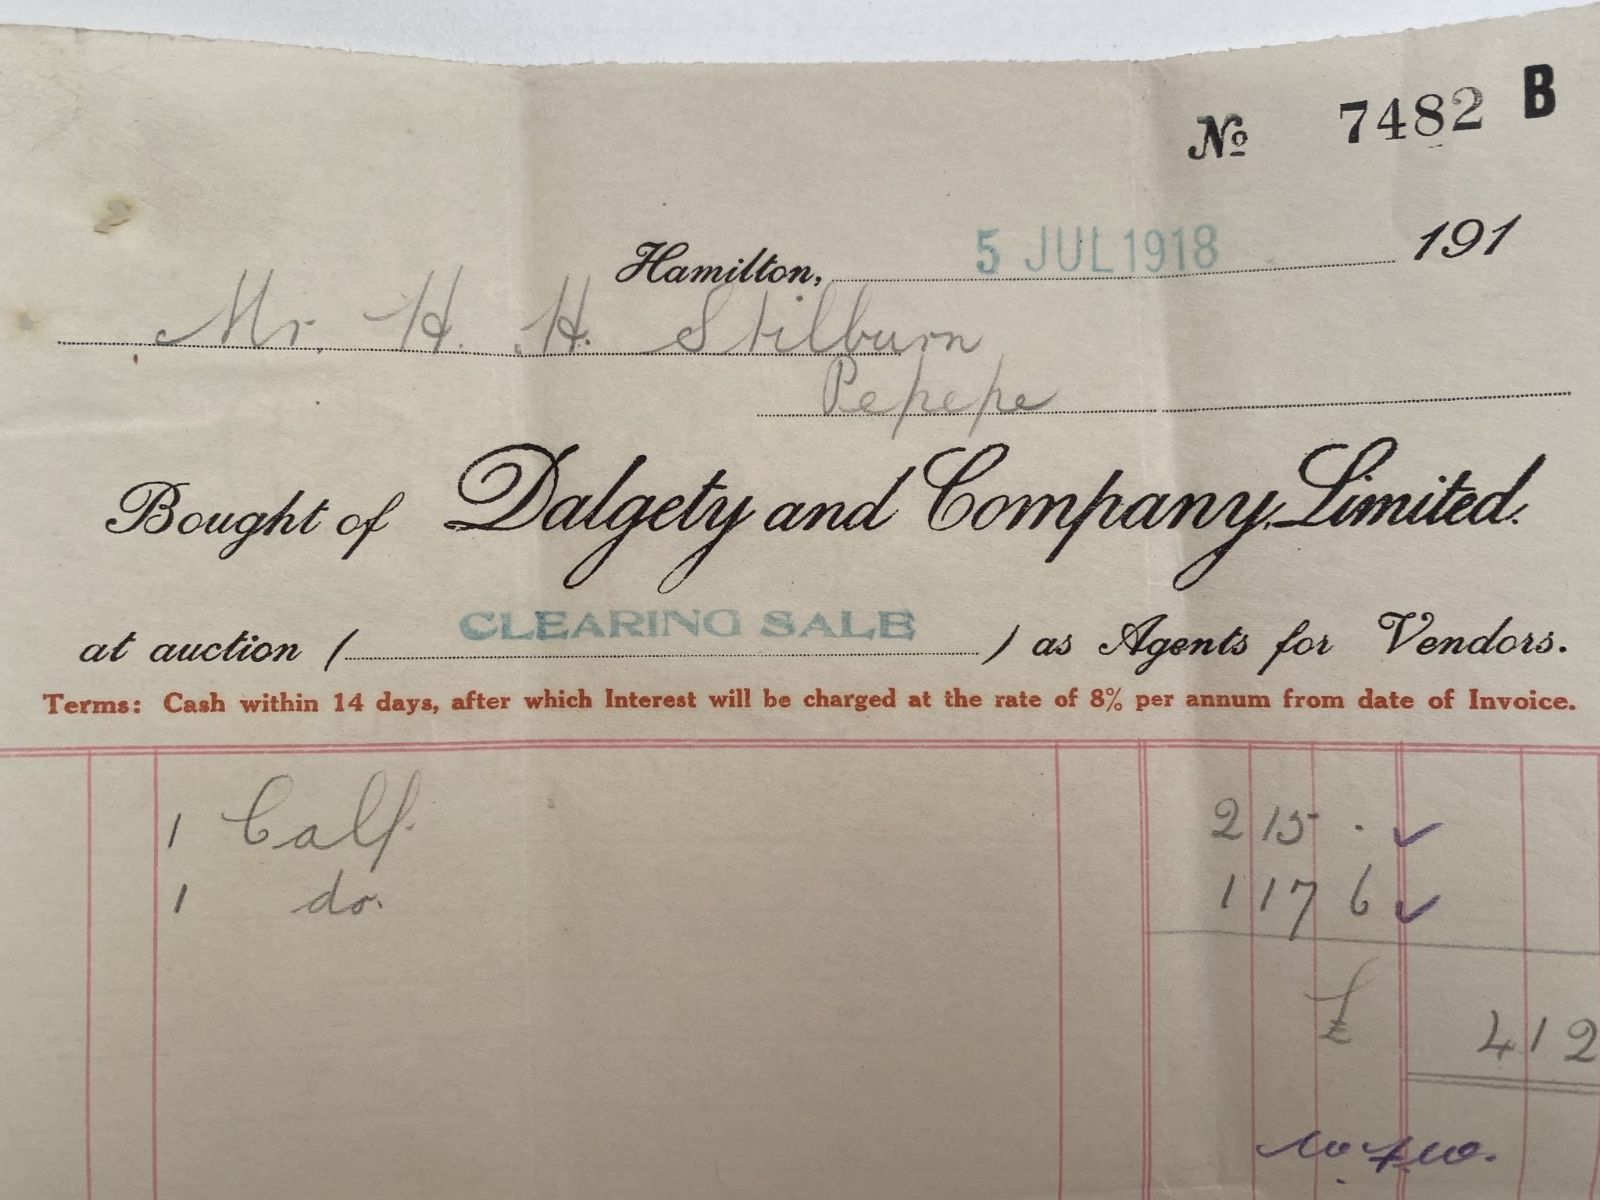 OLD INVOICE: Dalgety and Company Ltd - Stock Agents, Hamilton 1918 (104 yo)